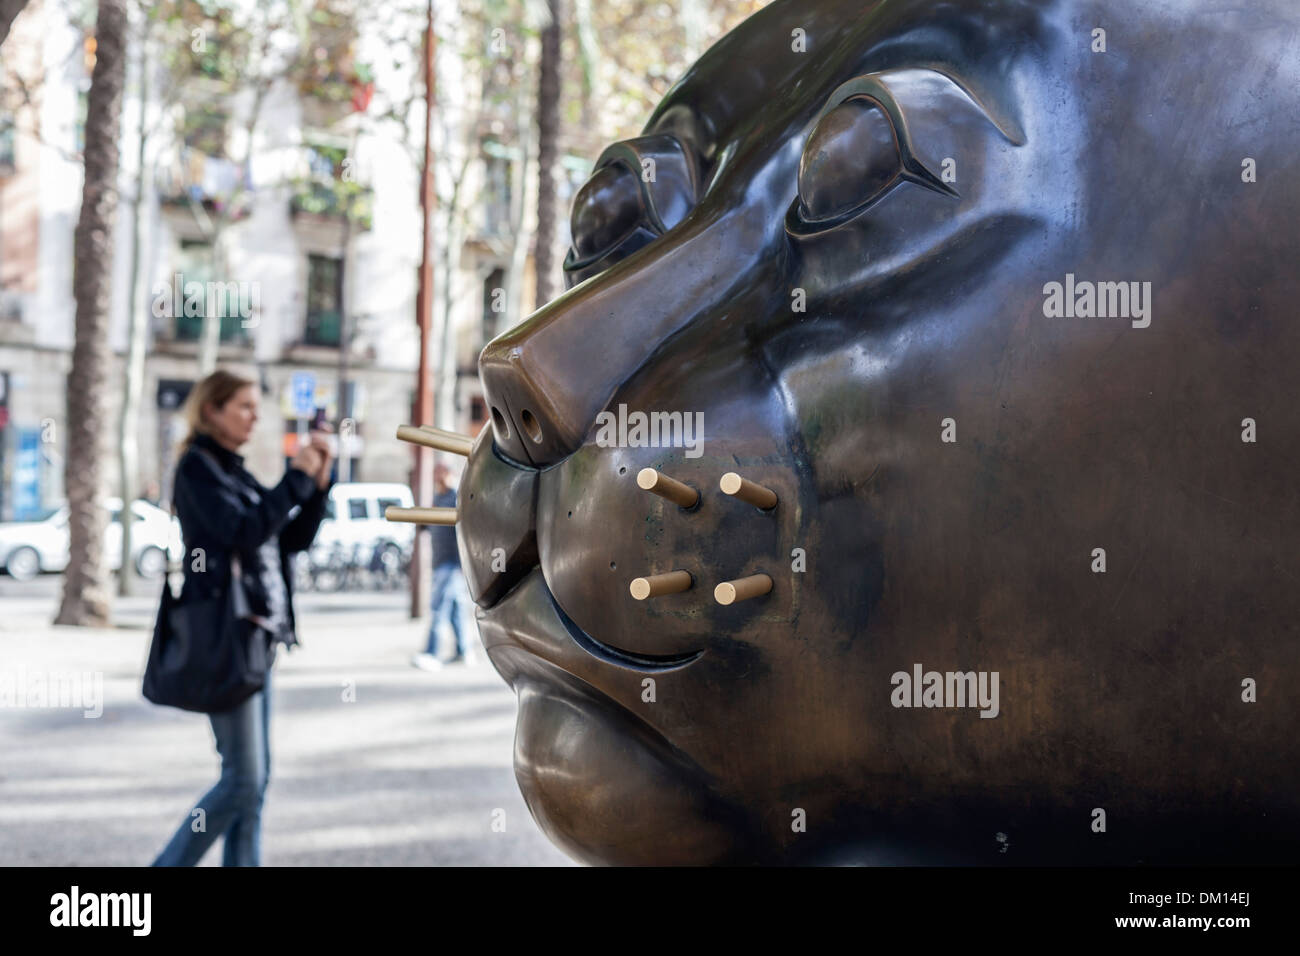 La escultura "El Gato", de Fernando Botero, ubicado en la Rambla del Raval, Barcelona. Foto de stock